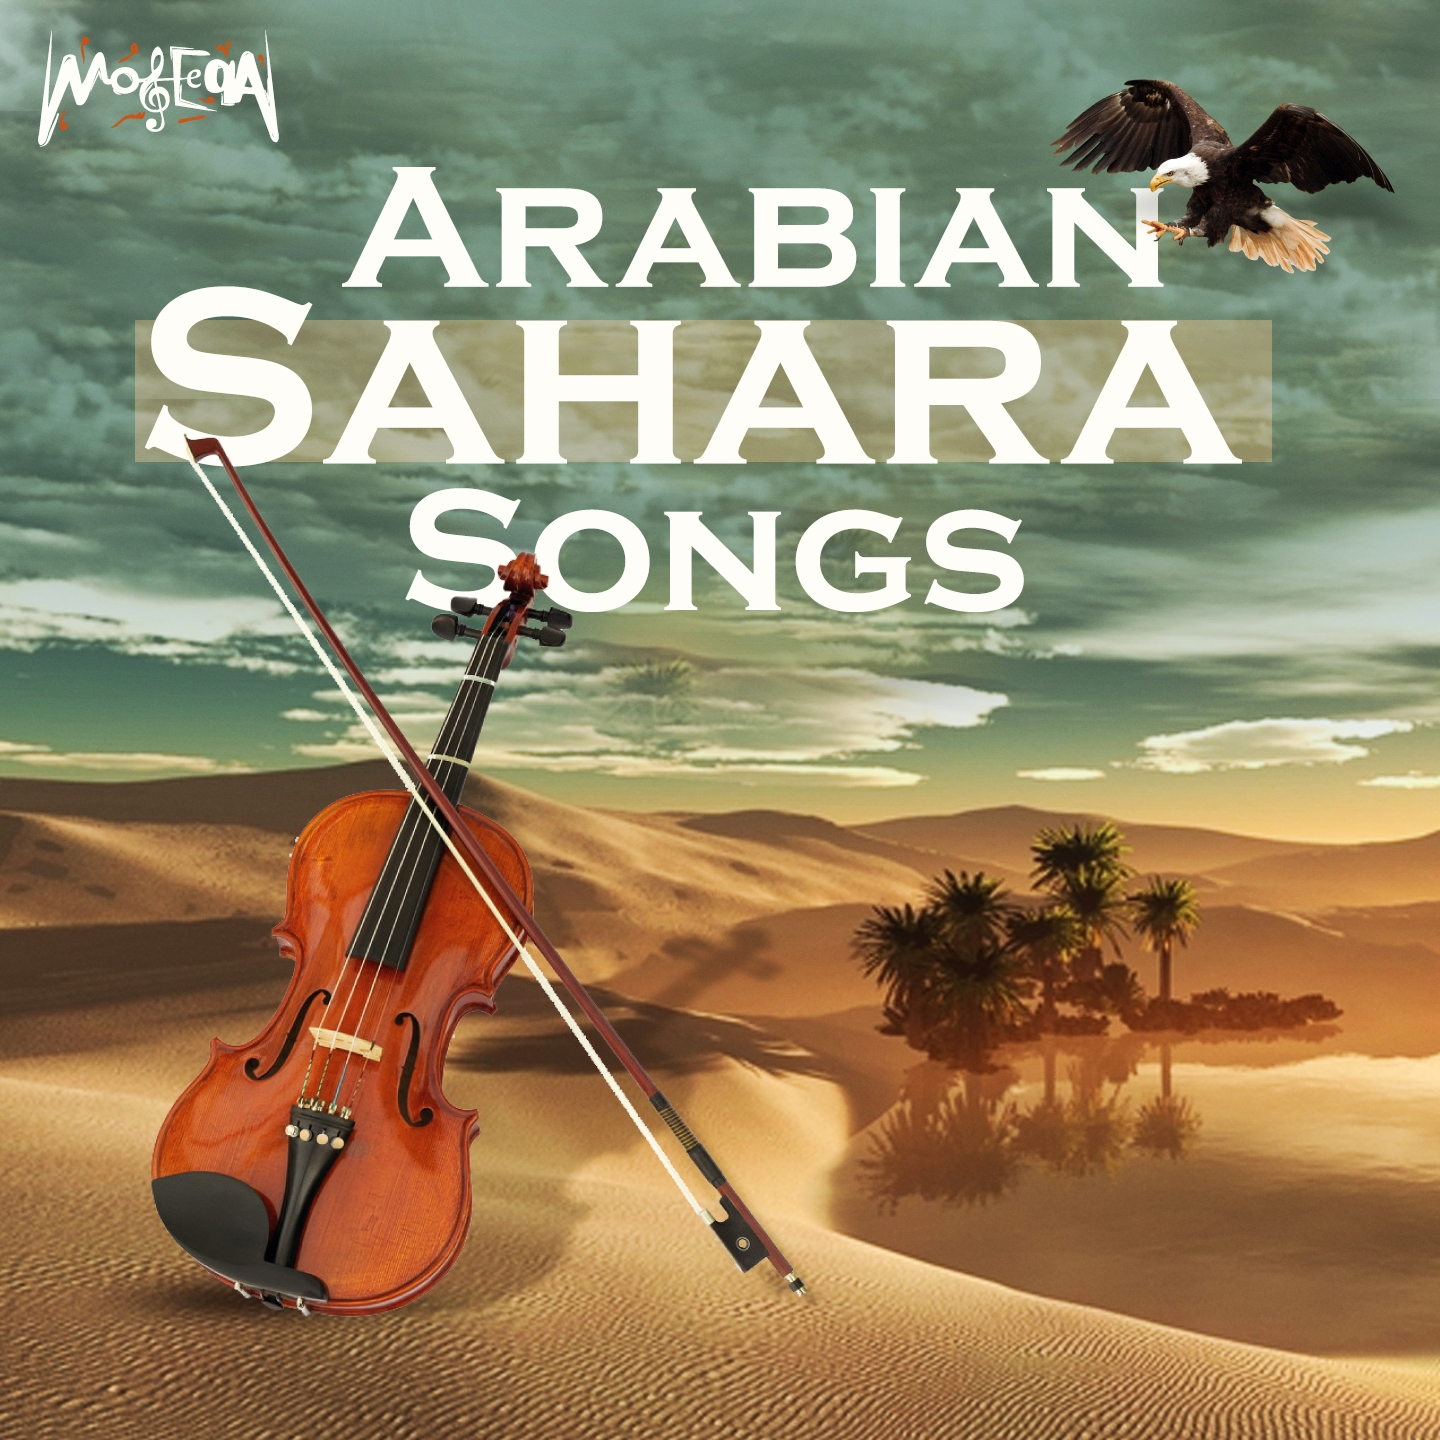 Arabian Sahara Songs